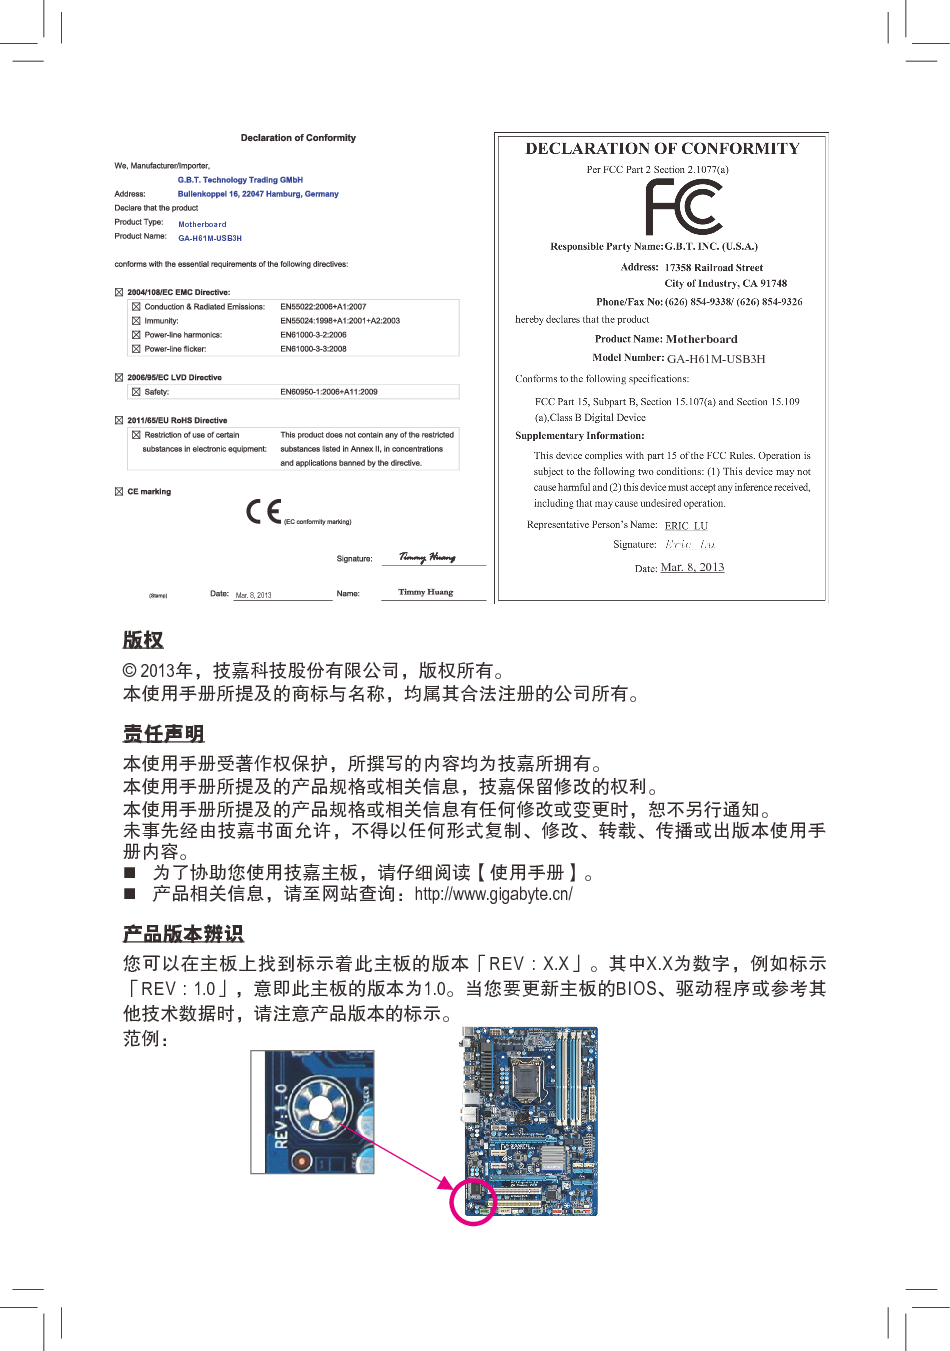 技嘉 Gigabyte GA-H61M-USB3H 使用手册 第1页